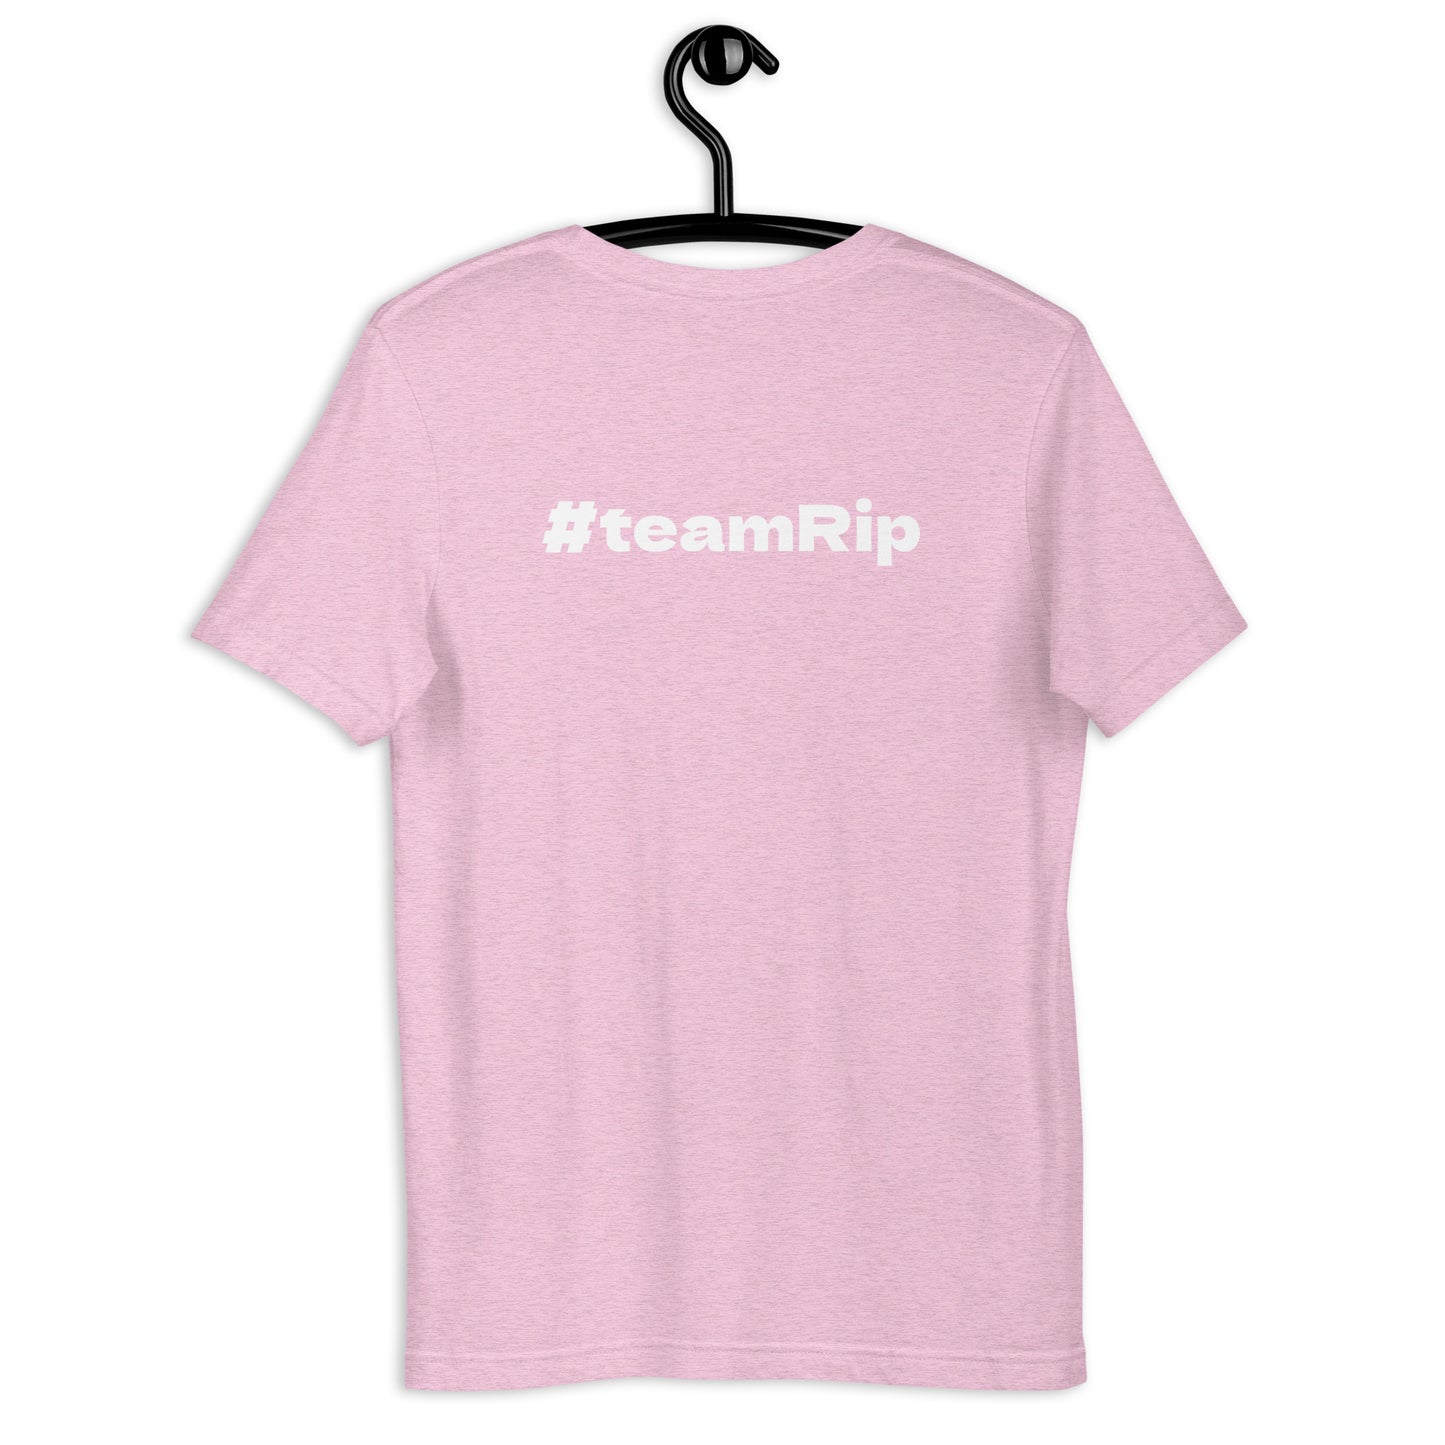 FASTCAT RELEASER - #teamRip - Unisex t-shirt